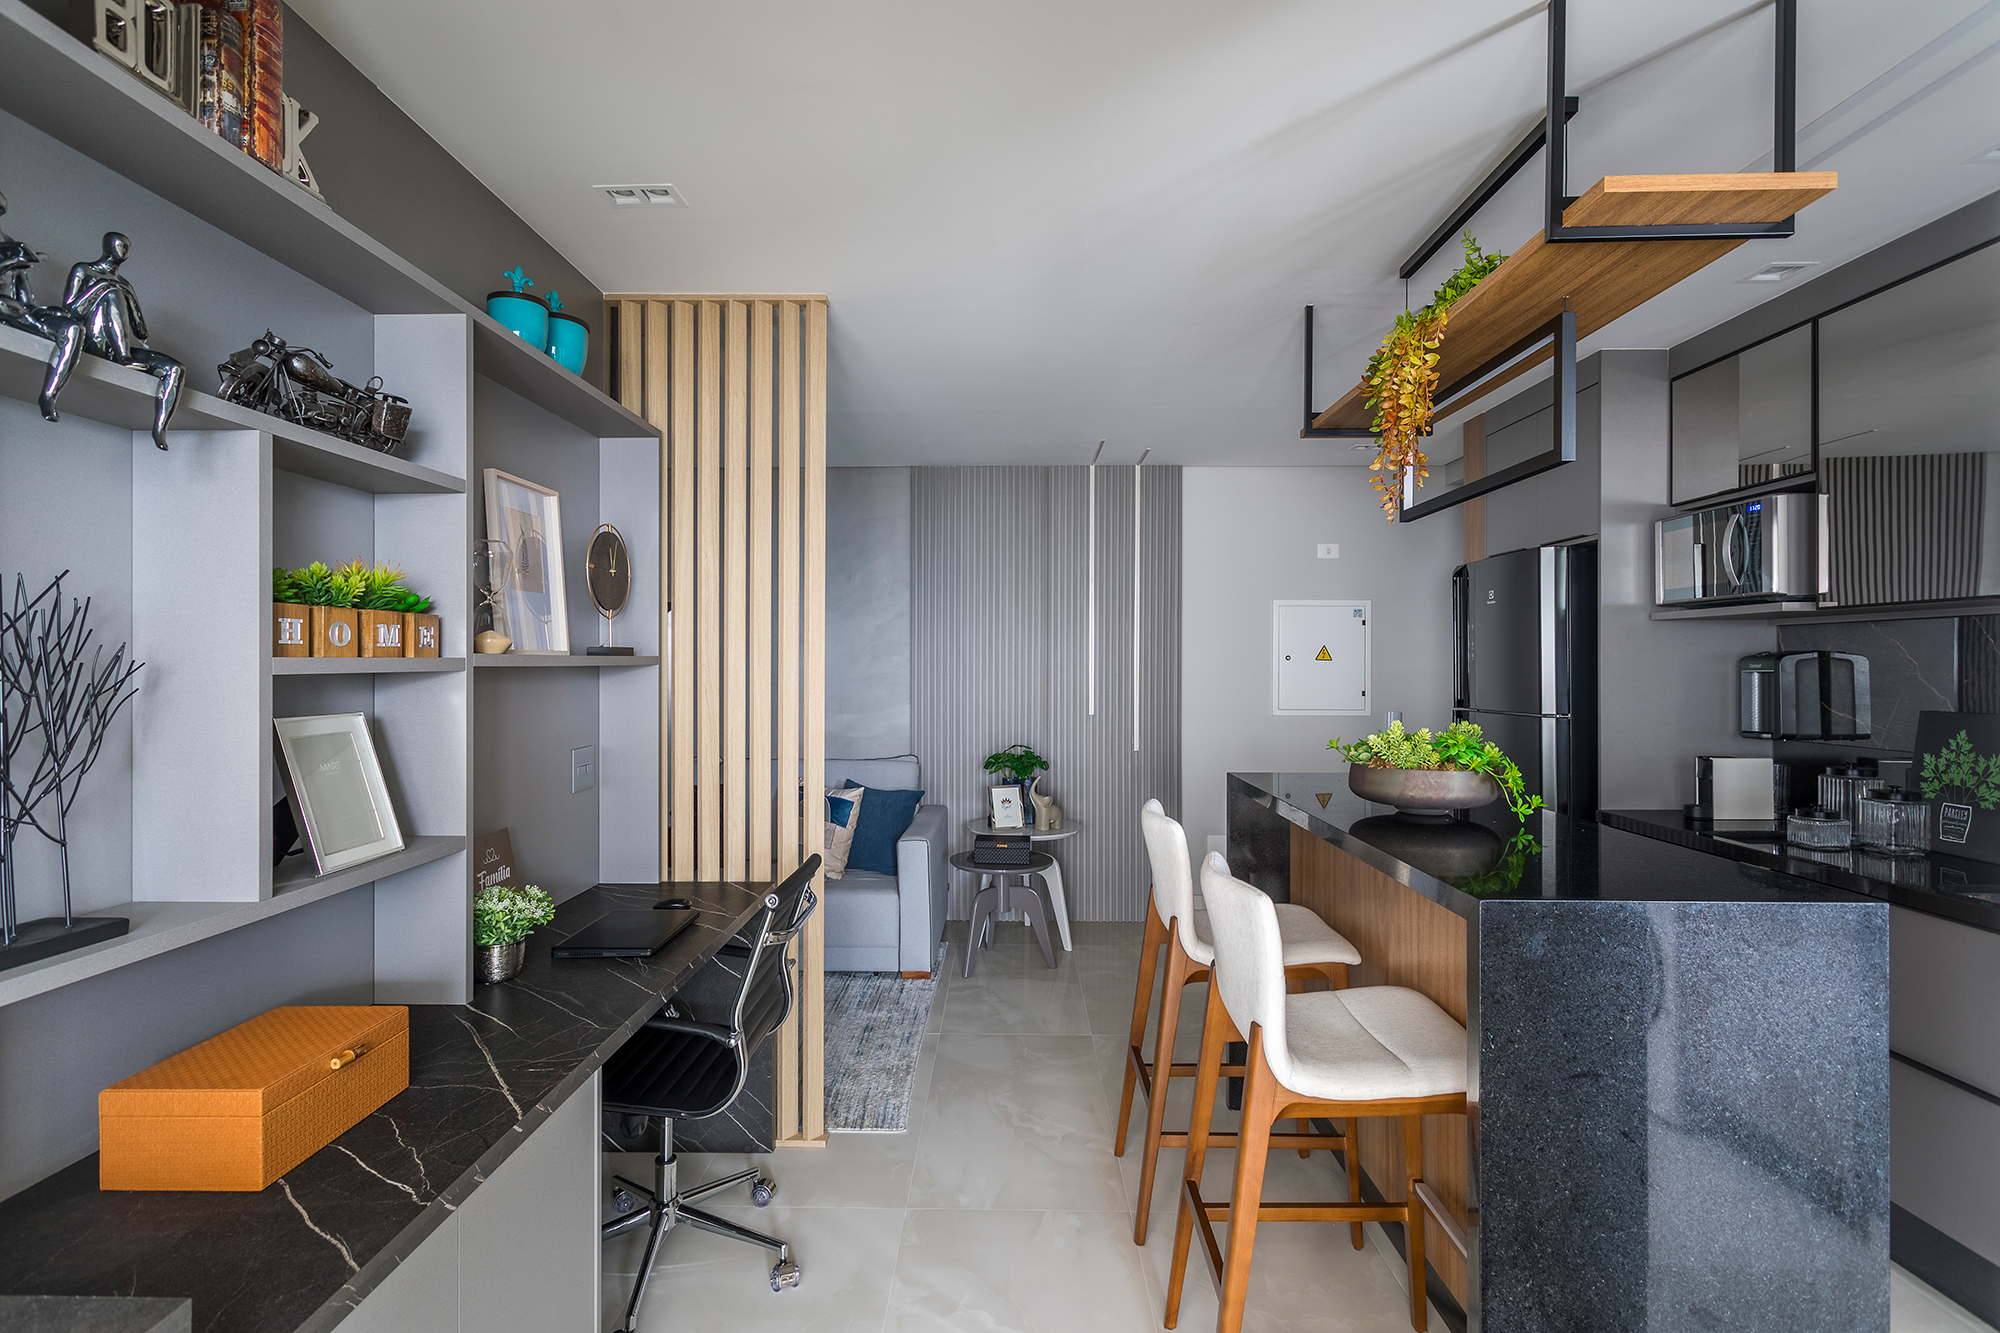  82 m² flat met verticale tuin in de gang en keuken met eiland